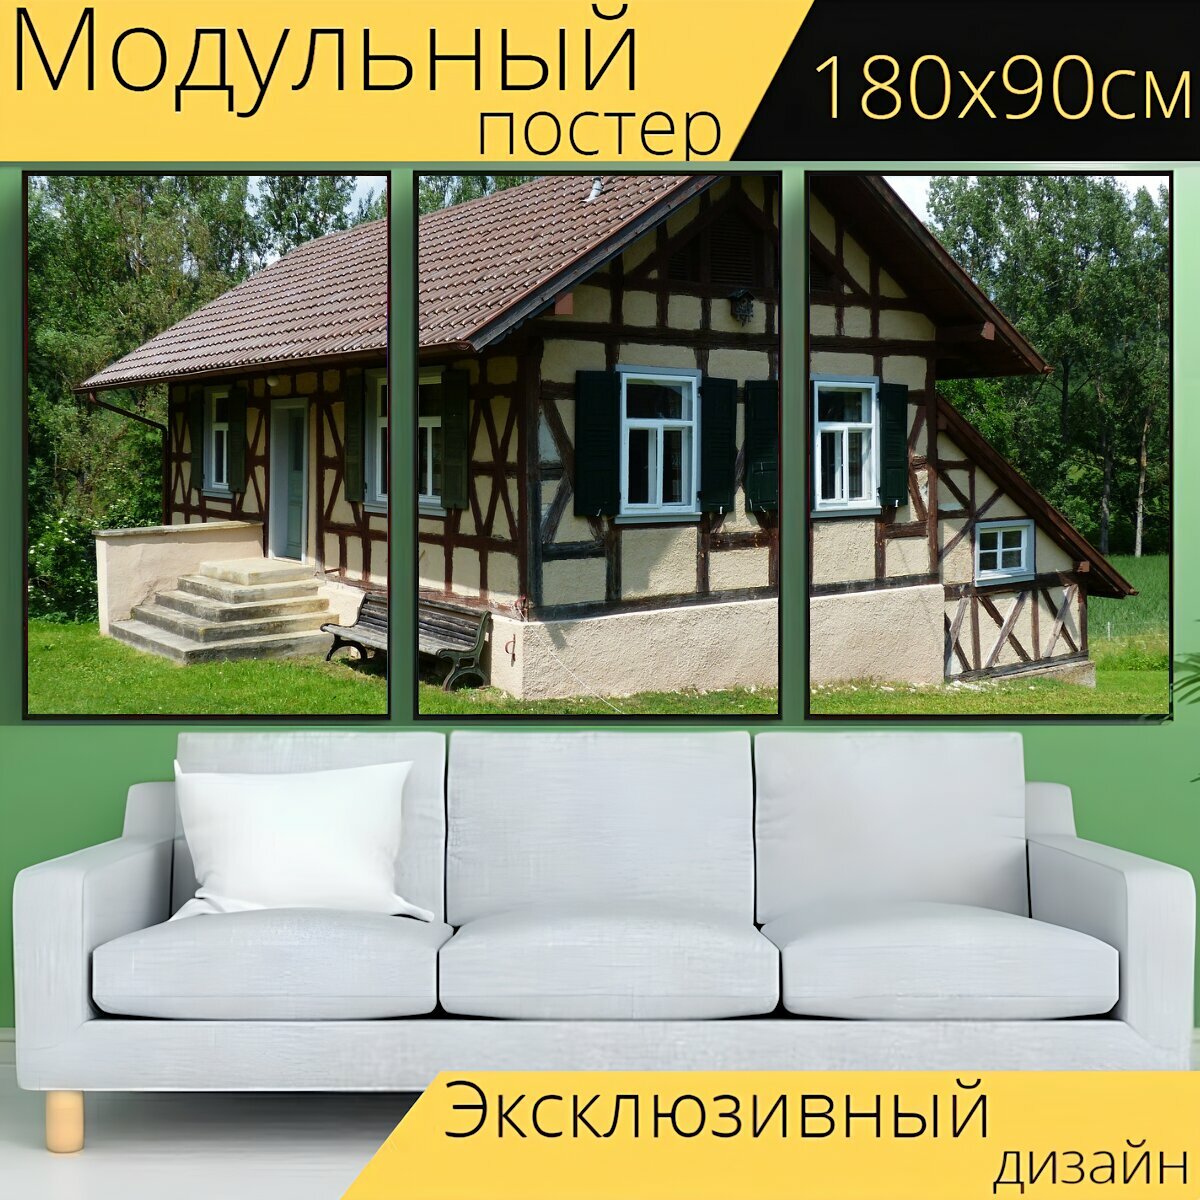 Модульный постер "Сельский дом, фахверковый дом, дом" 180 x 90 см. для интерьера